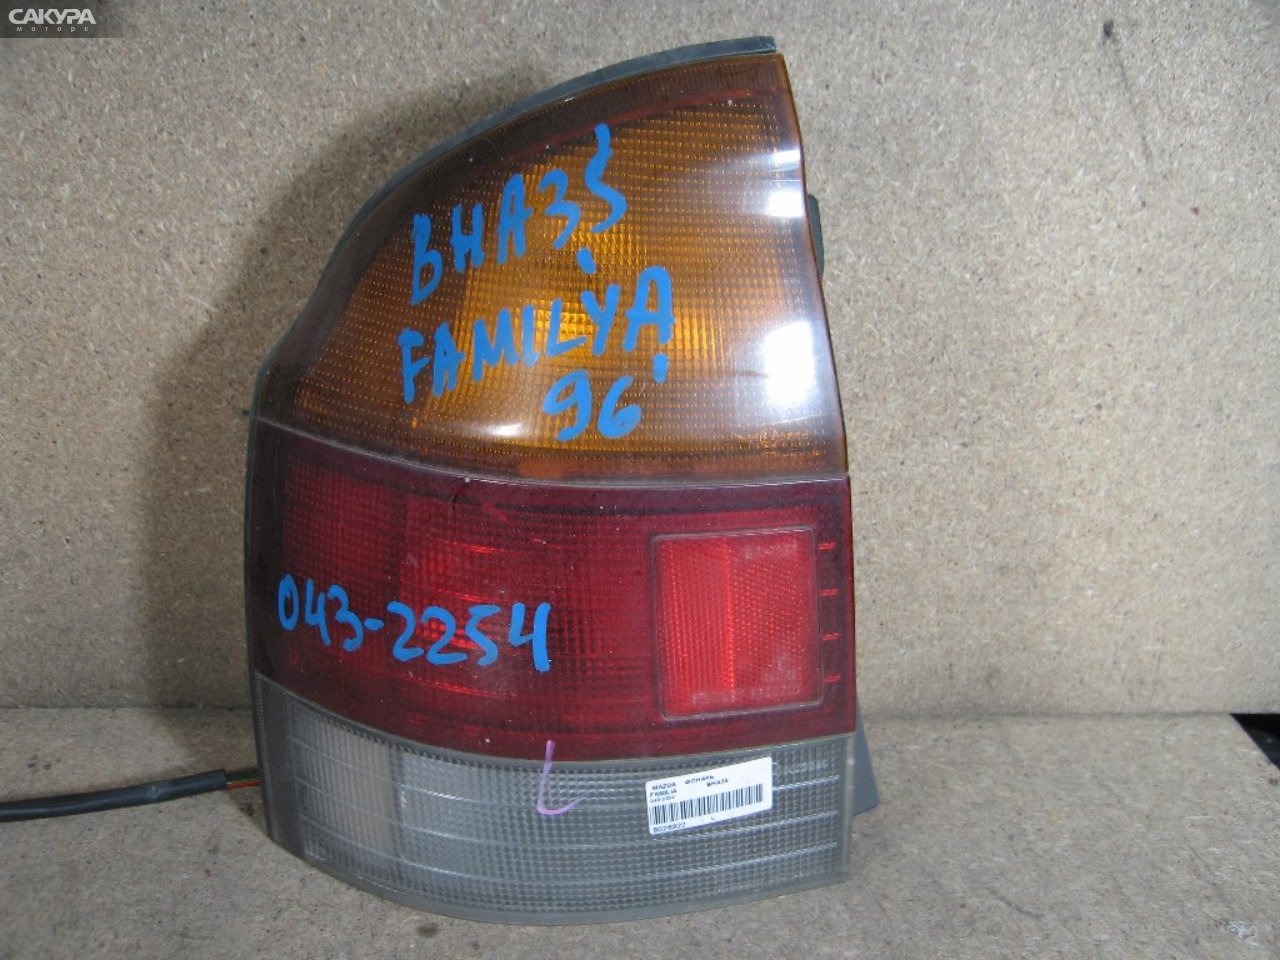 Фонарь стоп-сигнала левый Mazda Familia BHA3S 043-2254: купить в Сакура Абакан.